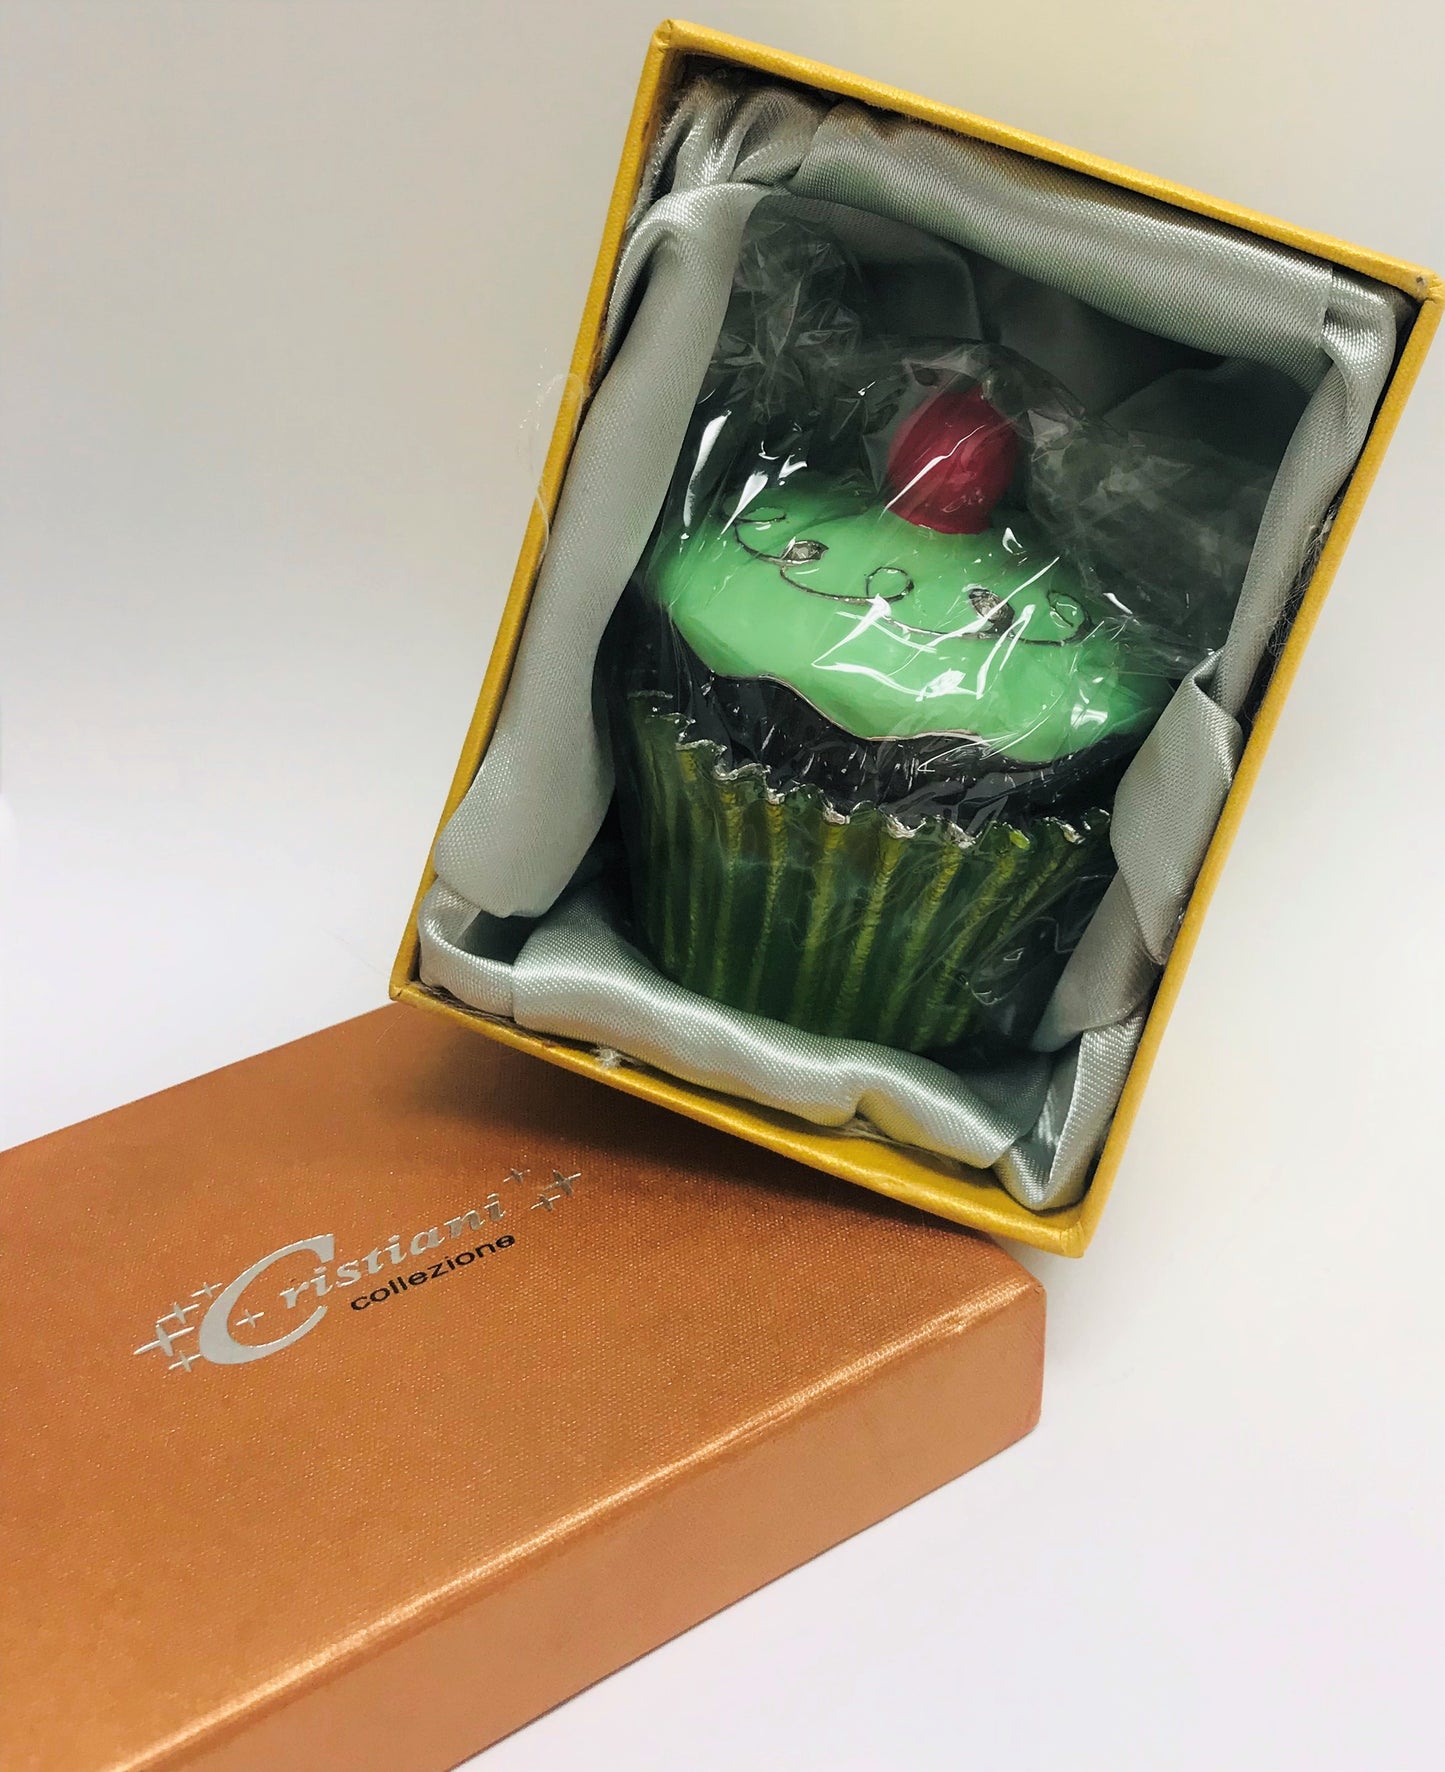 Cristiani Collezione Green Cupcake Trinket Box.